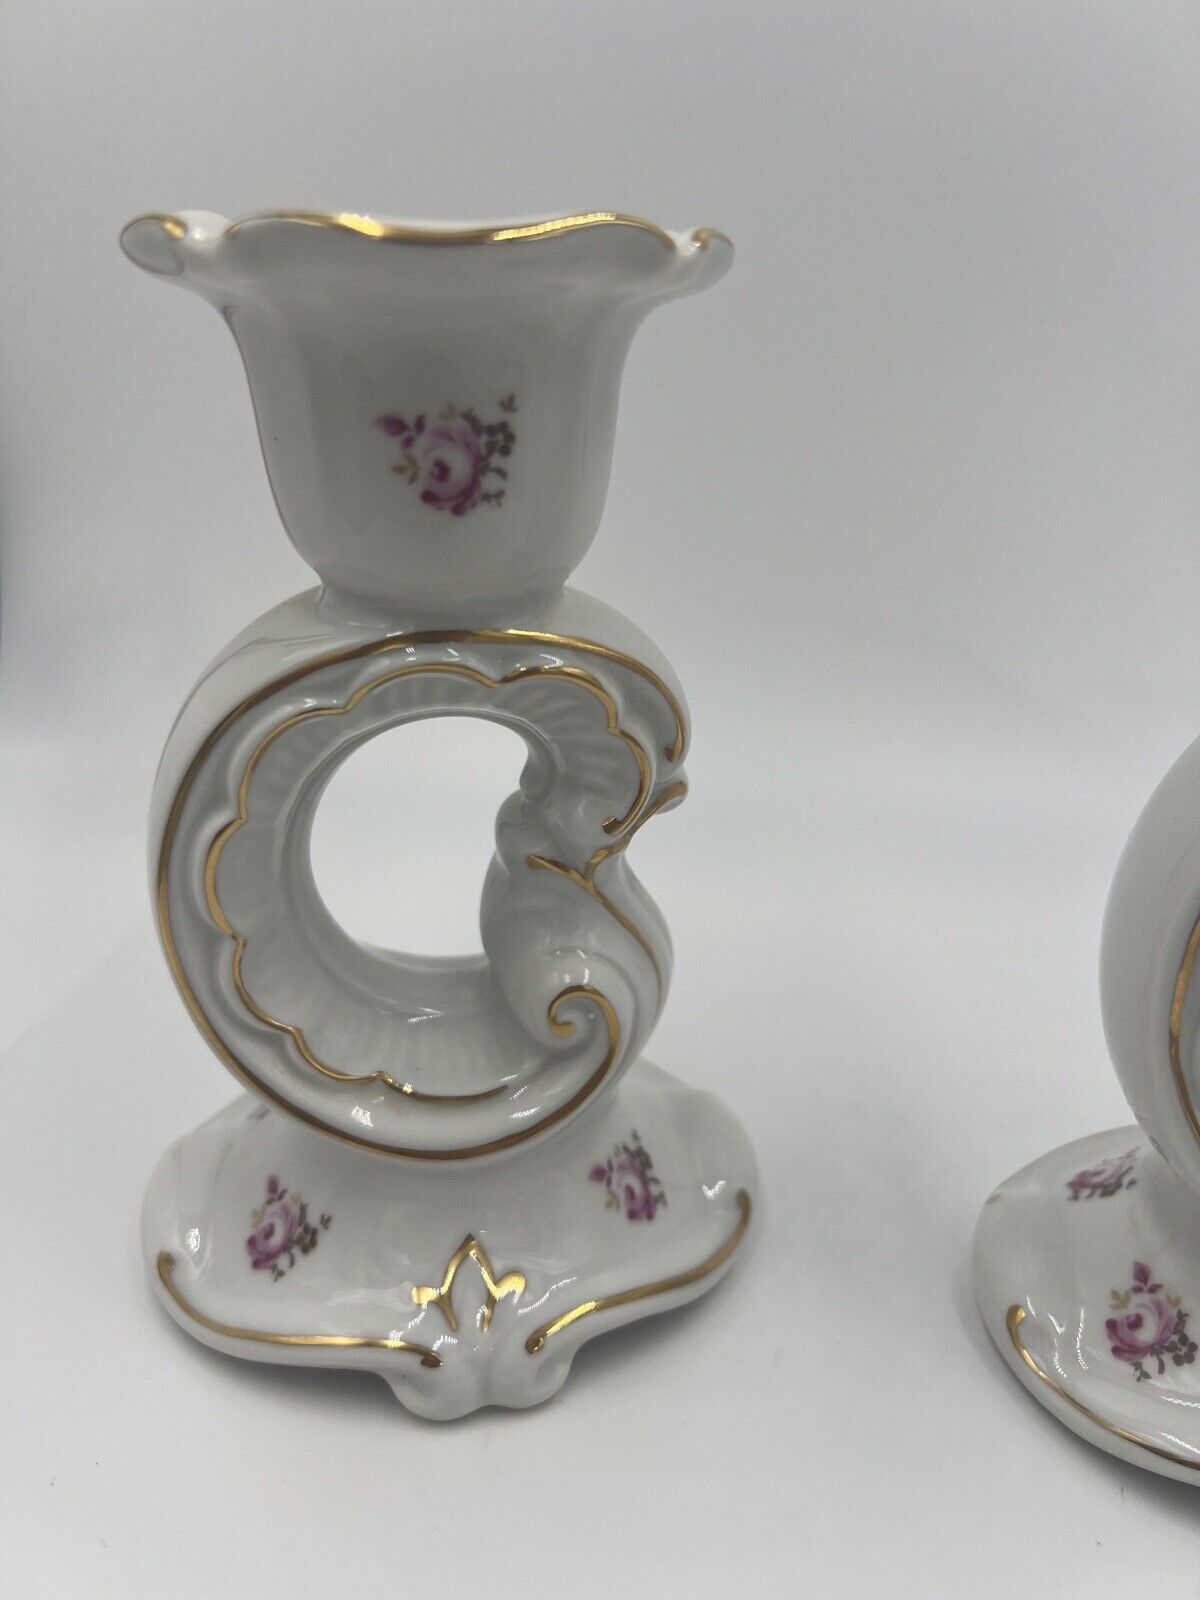 Weimar Candle Holder Porcelain Floral Gold Trim Germany Vintage Set of 2